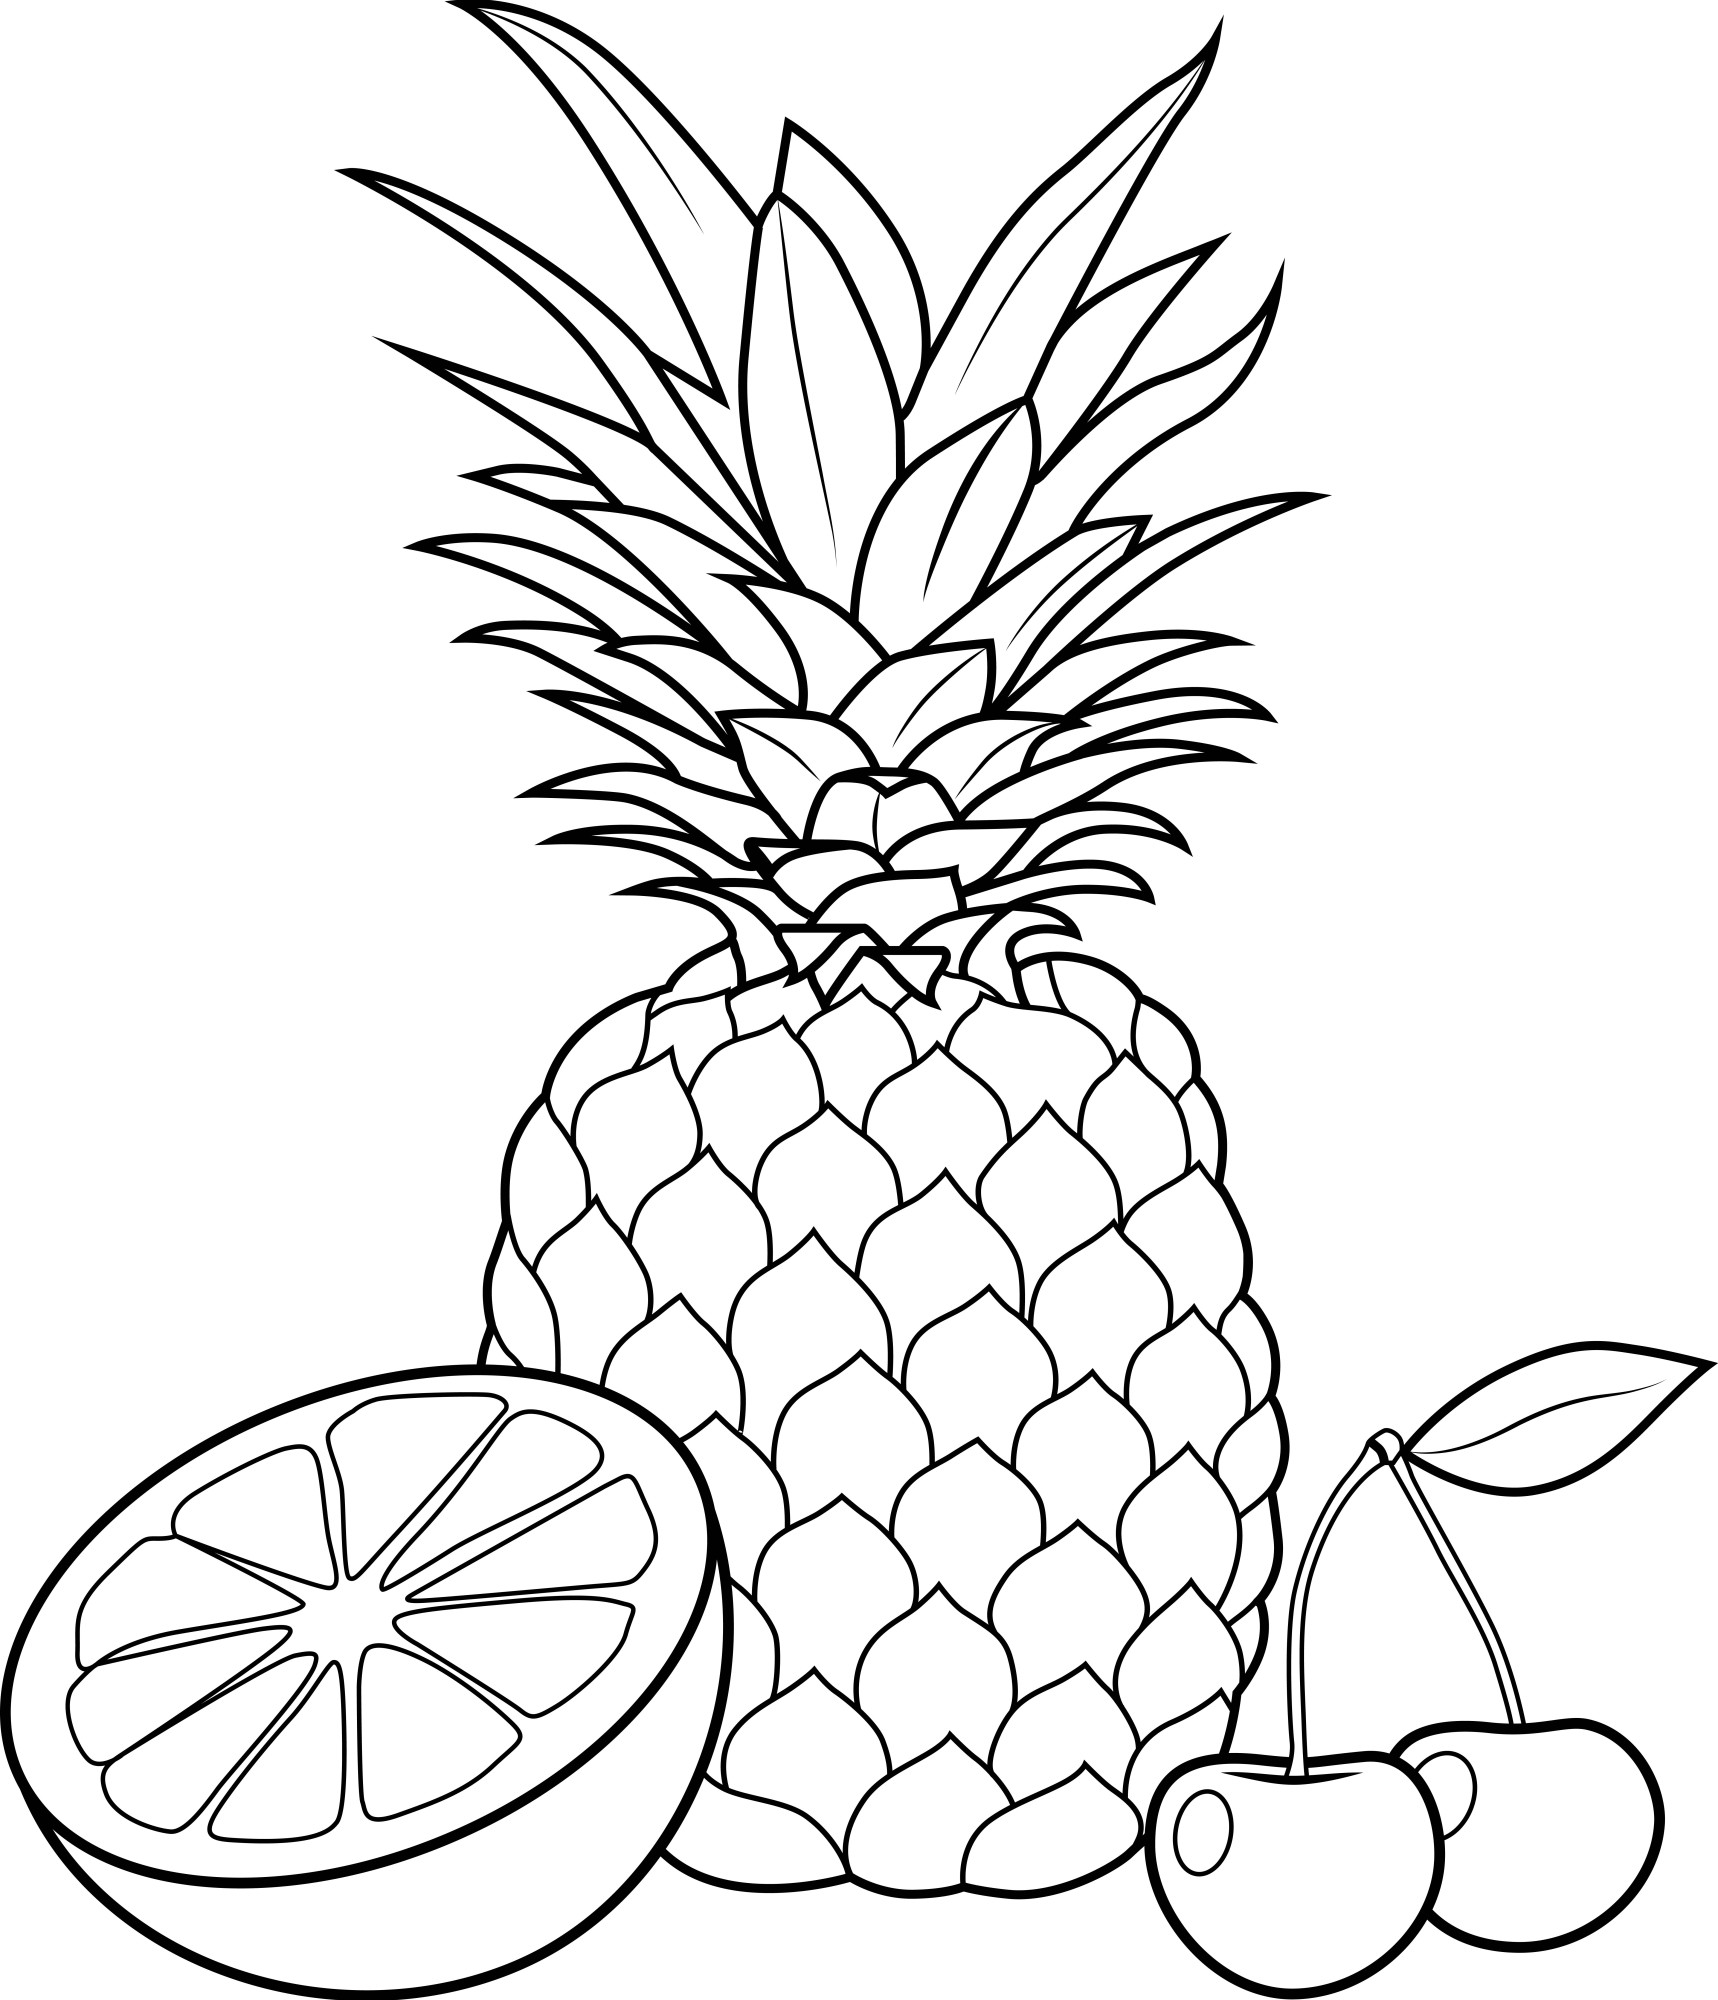 Раскраска для детей: ананас с апельсином и вишней